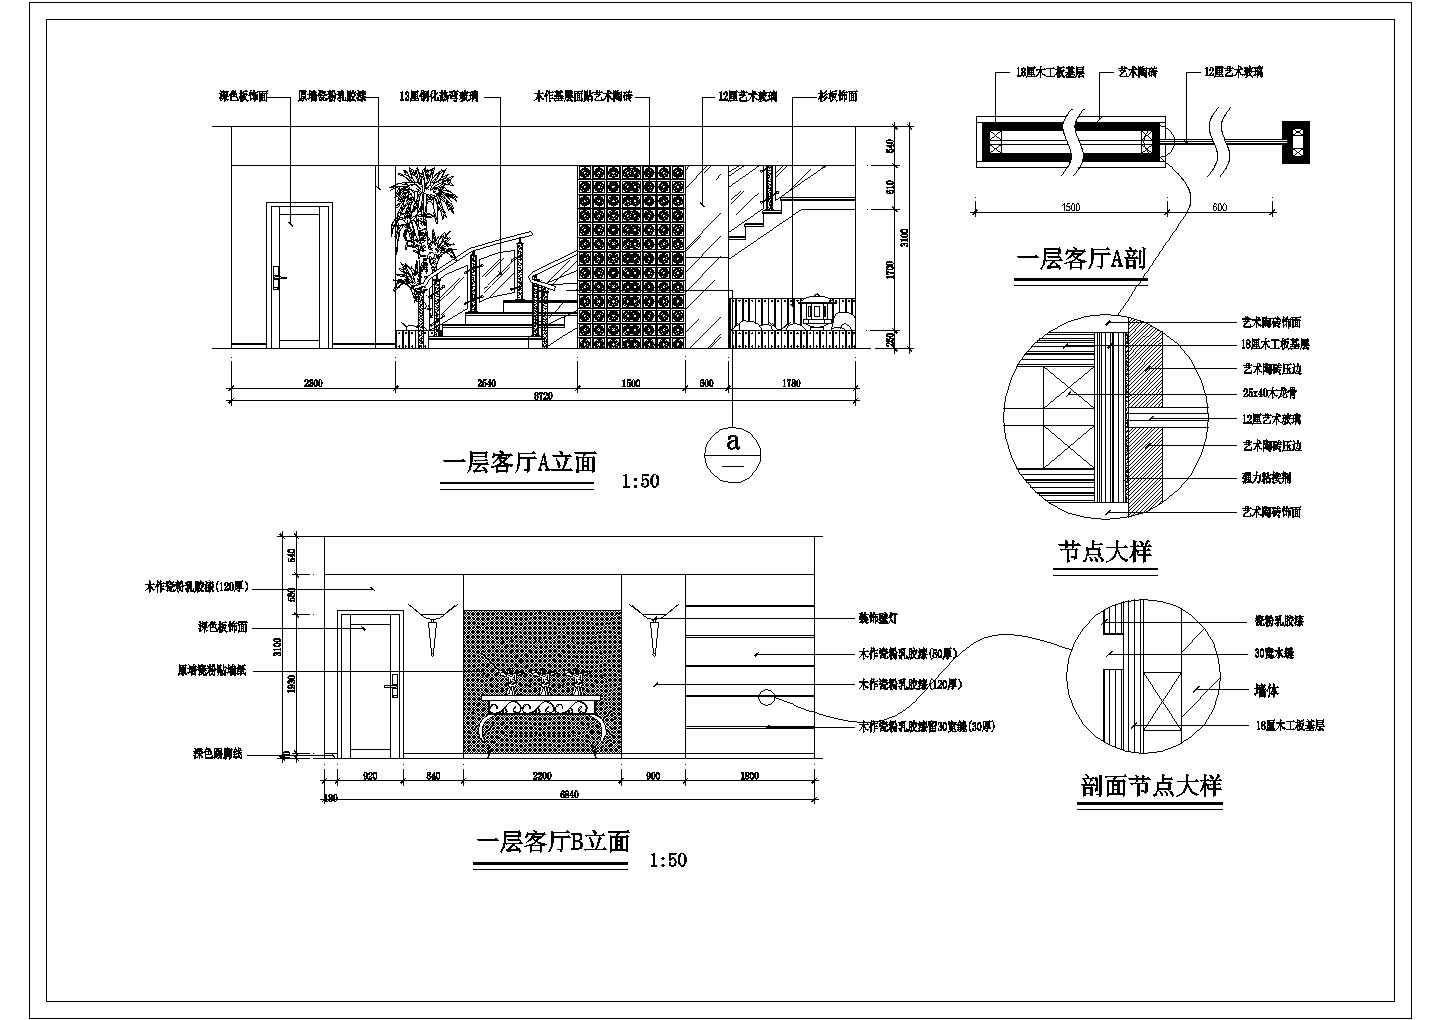 中天花园库区别墅样板间室内装修设计施工图